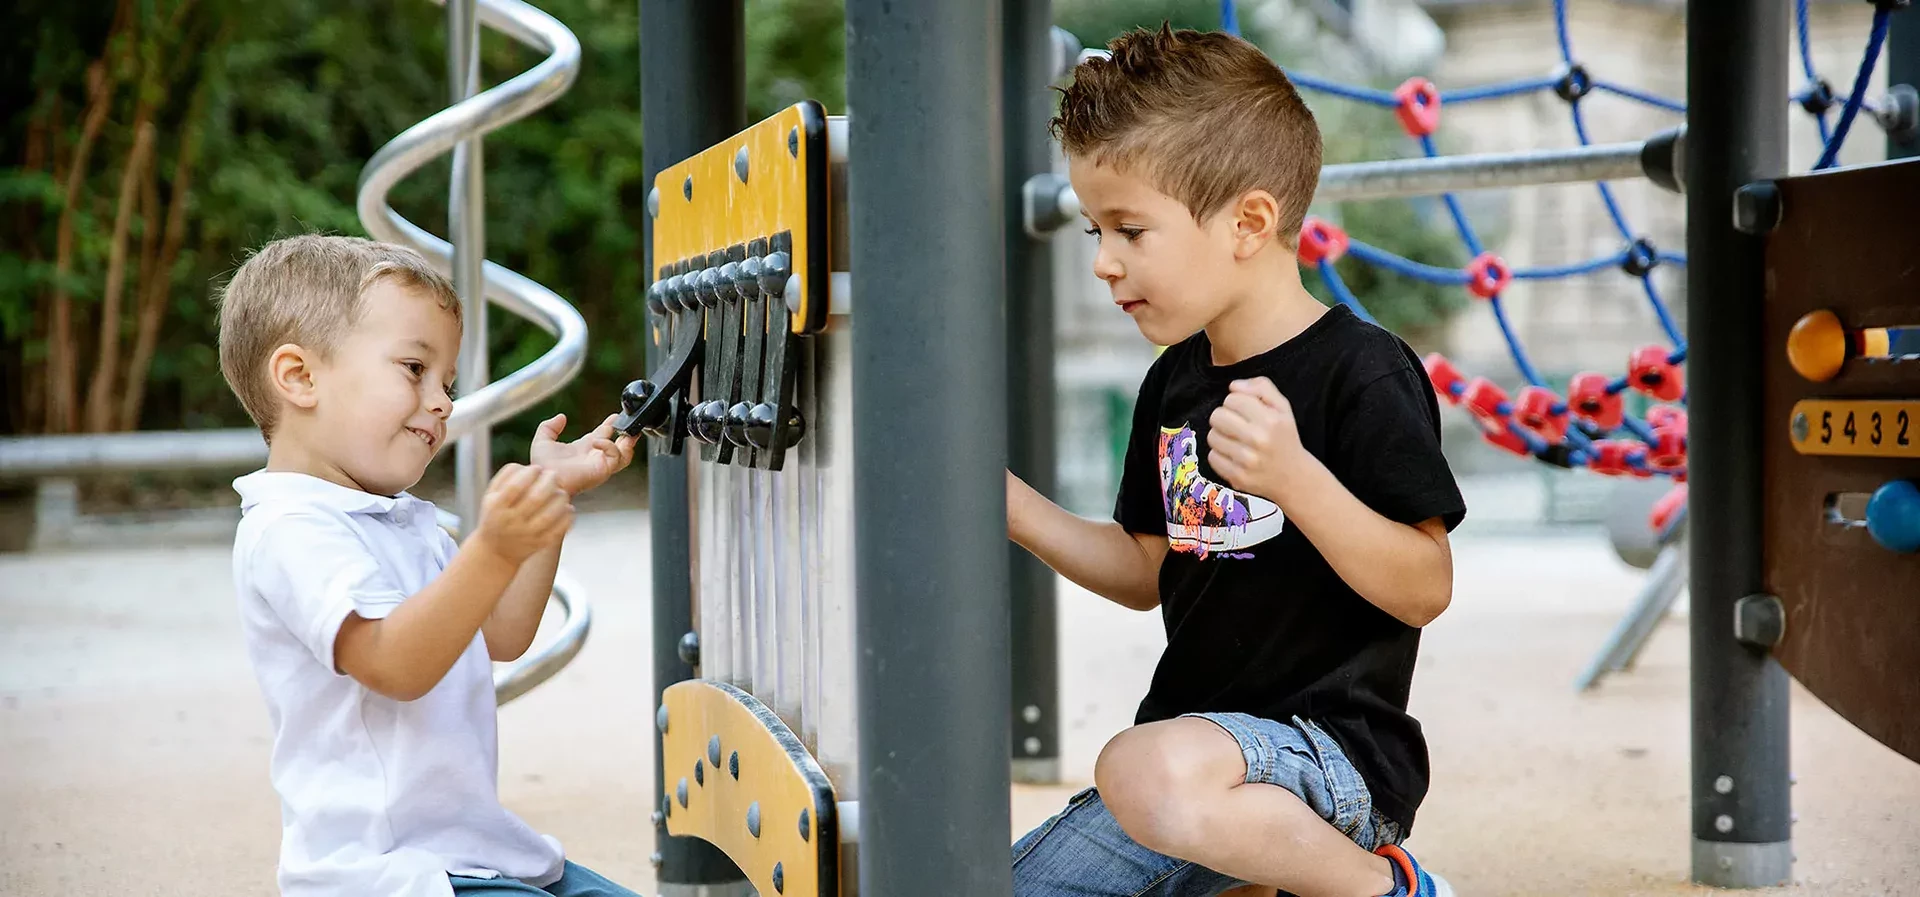 kinderen spelen op een inclusief speelpaneel in een park